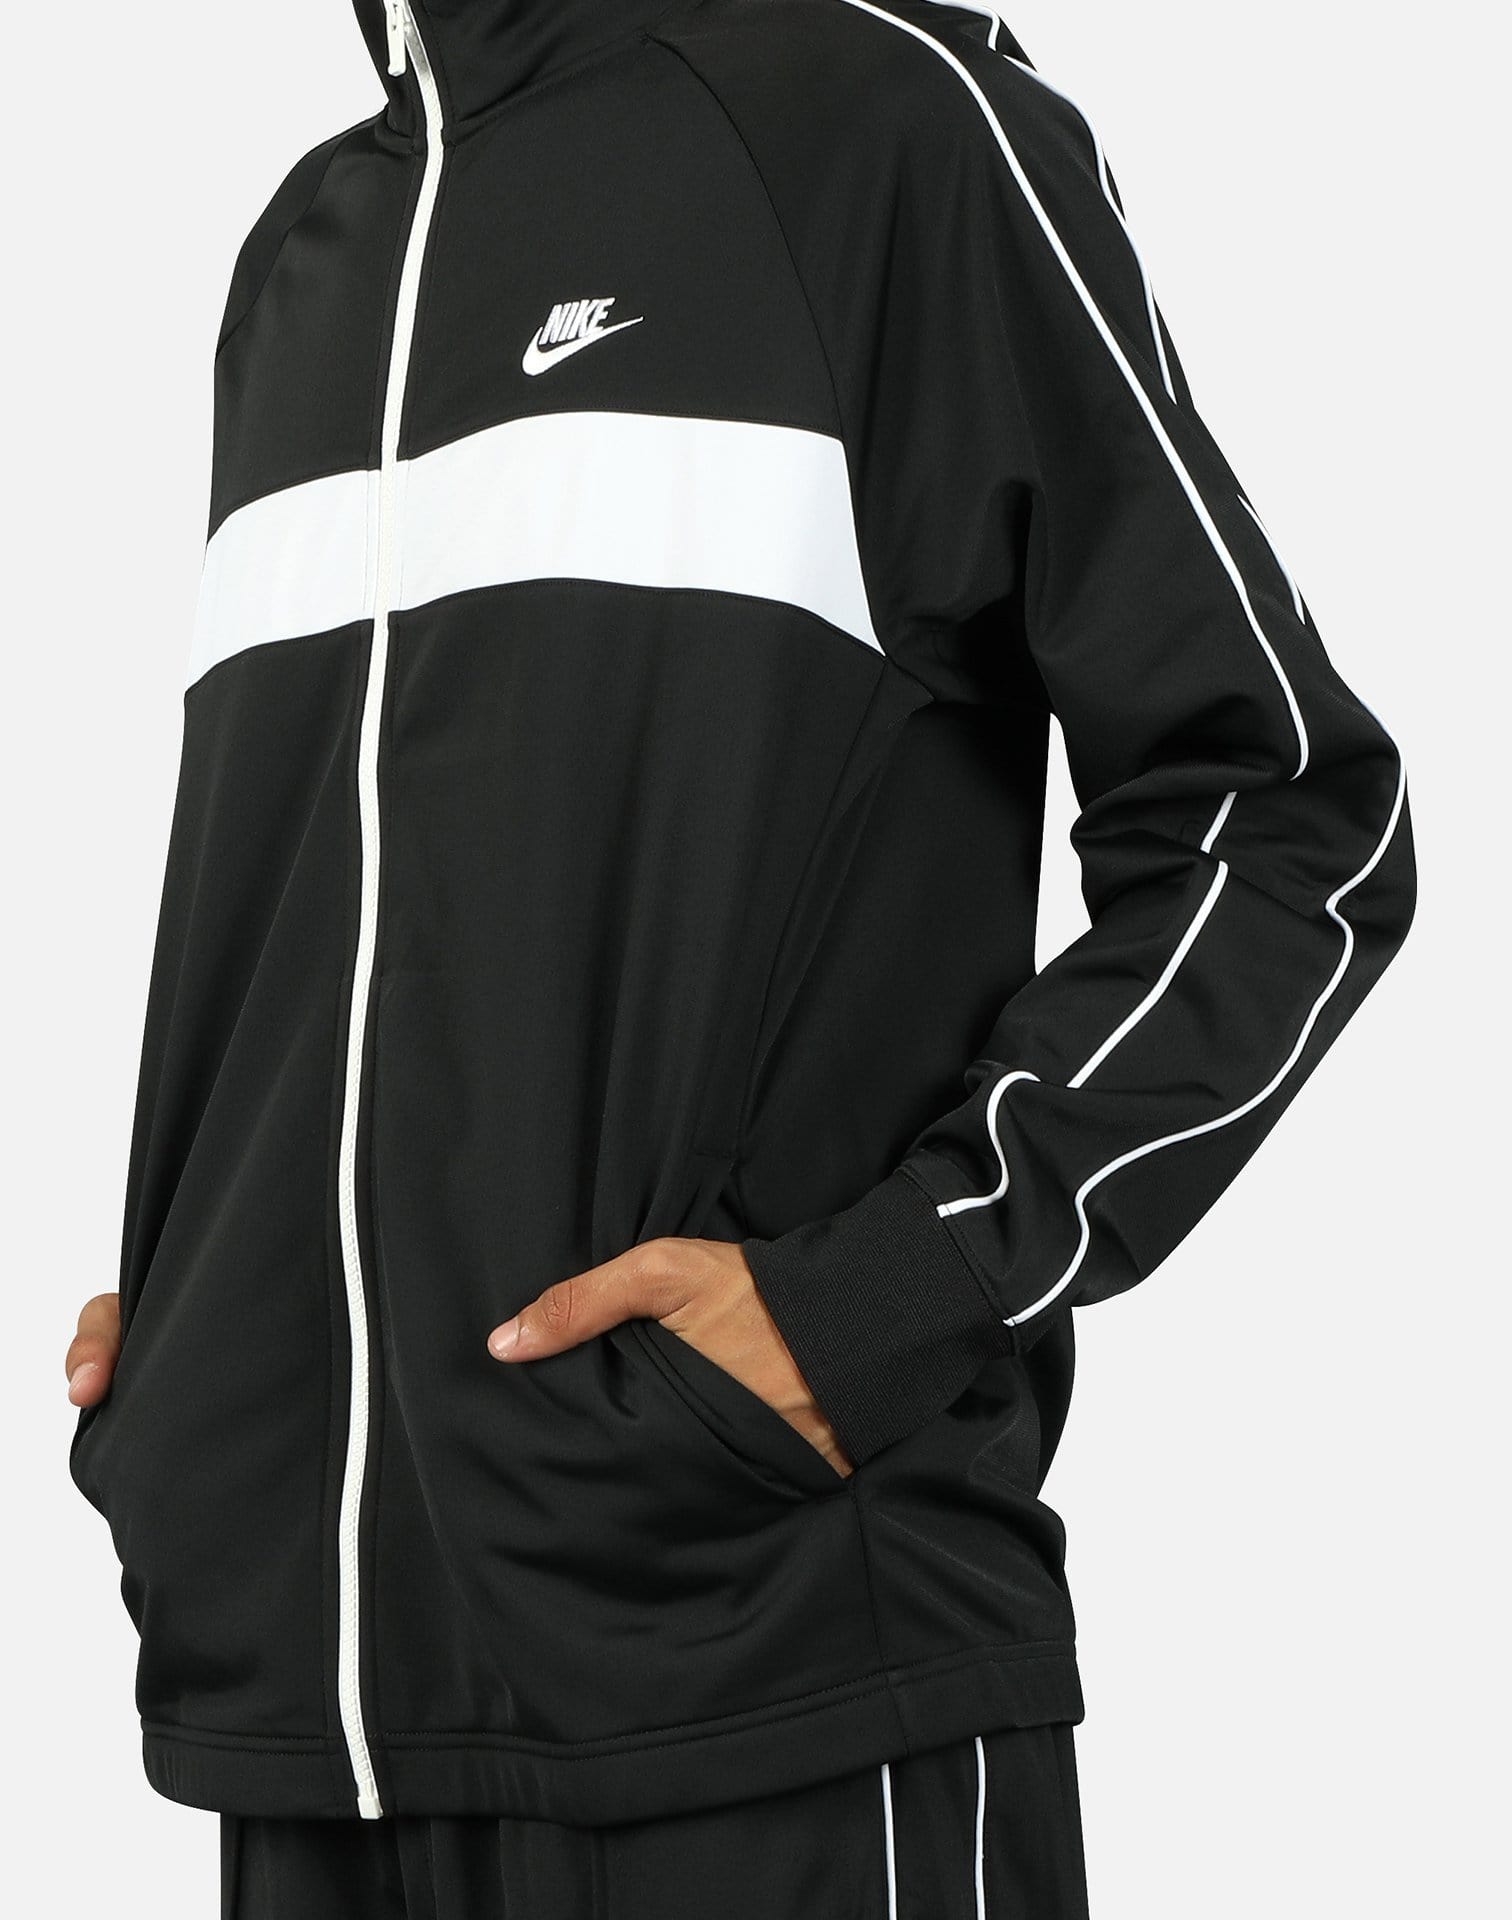 Nike NSW Men's Track Jacket